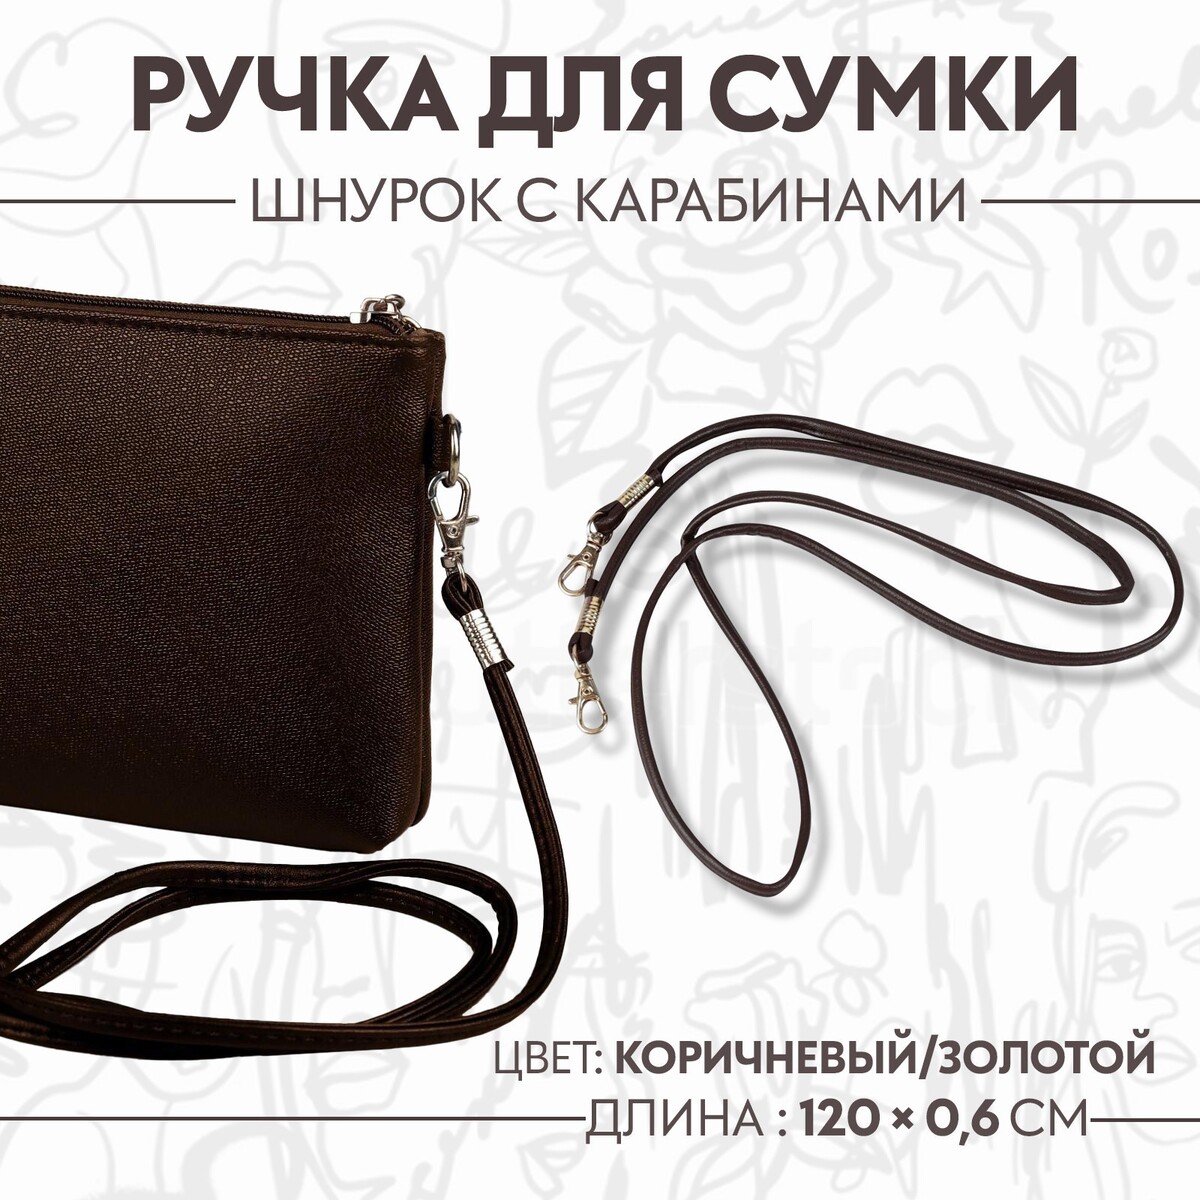 Ручка-шнурок для сумки, с карабинами, 120 × 0,6 см, цвет коричневый ручка для сумки с карабинами 60 × 2 см светло коричневый